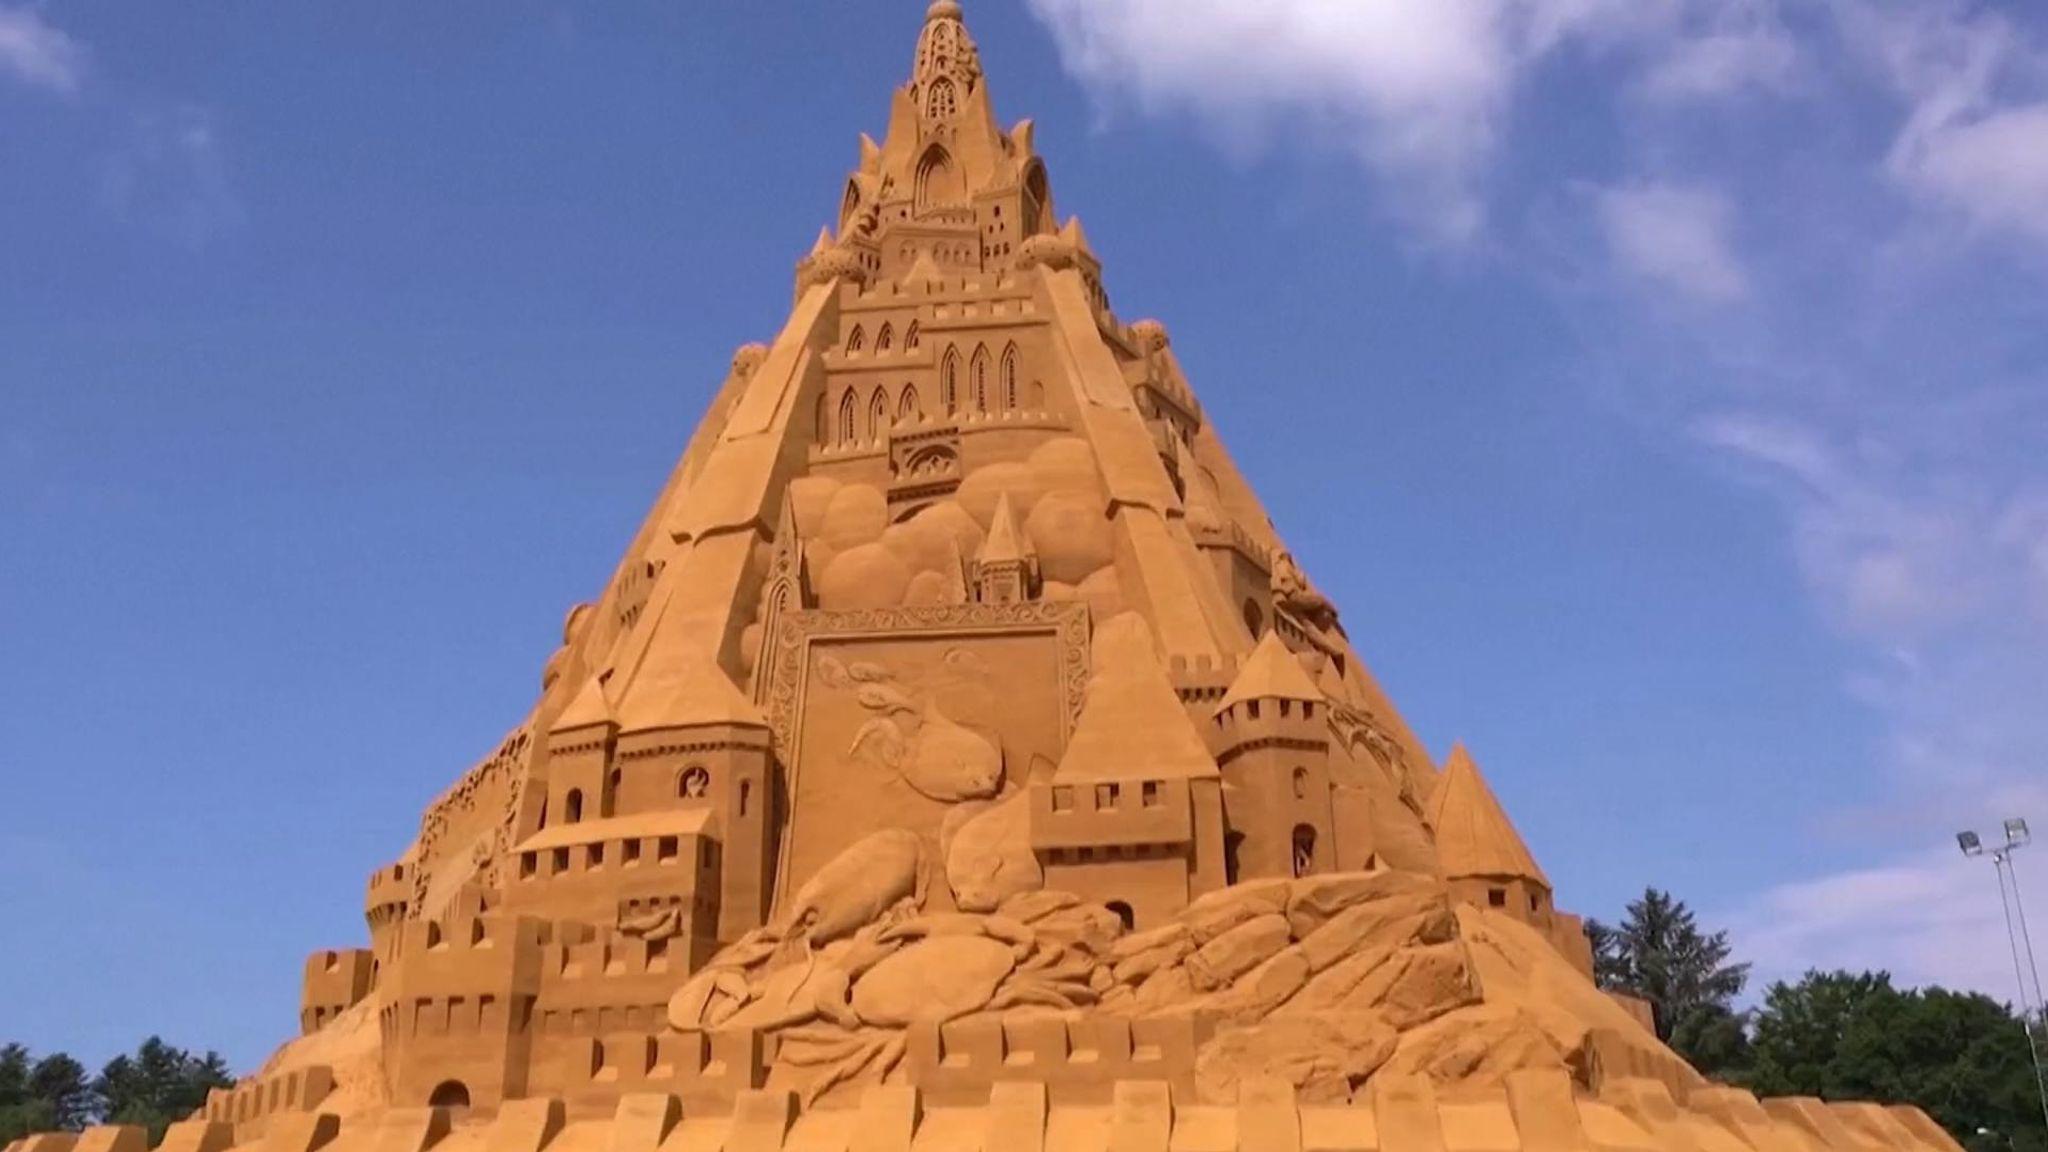 World's tallest sandcastle constructed in Denmark_30.1